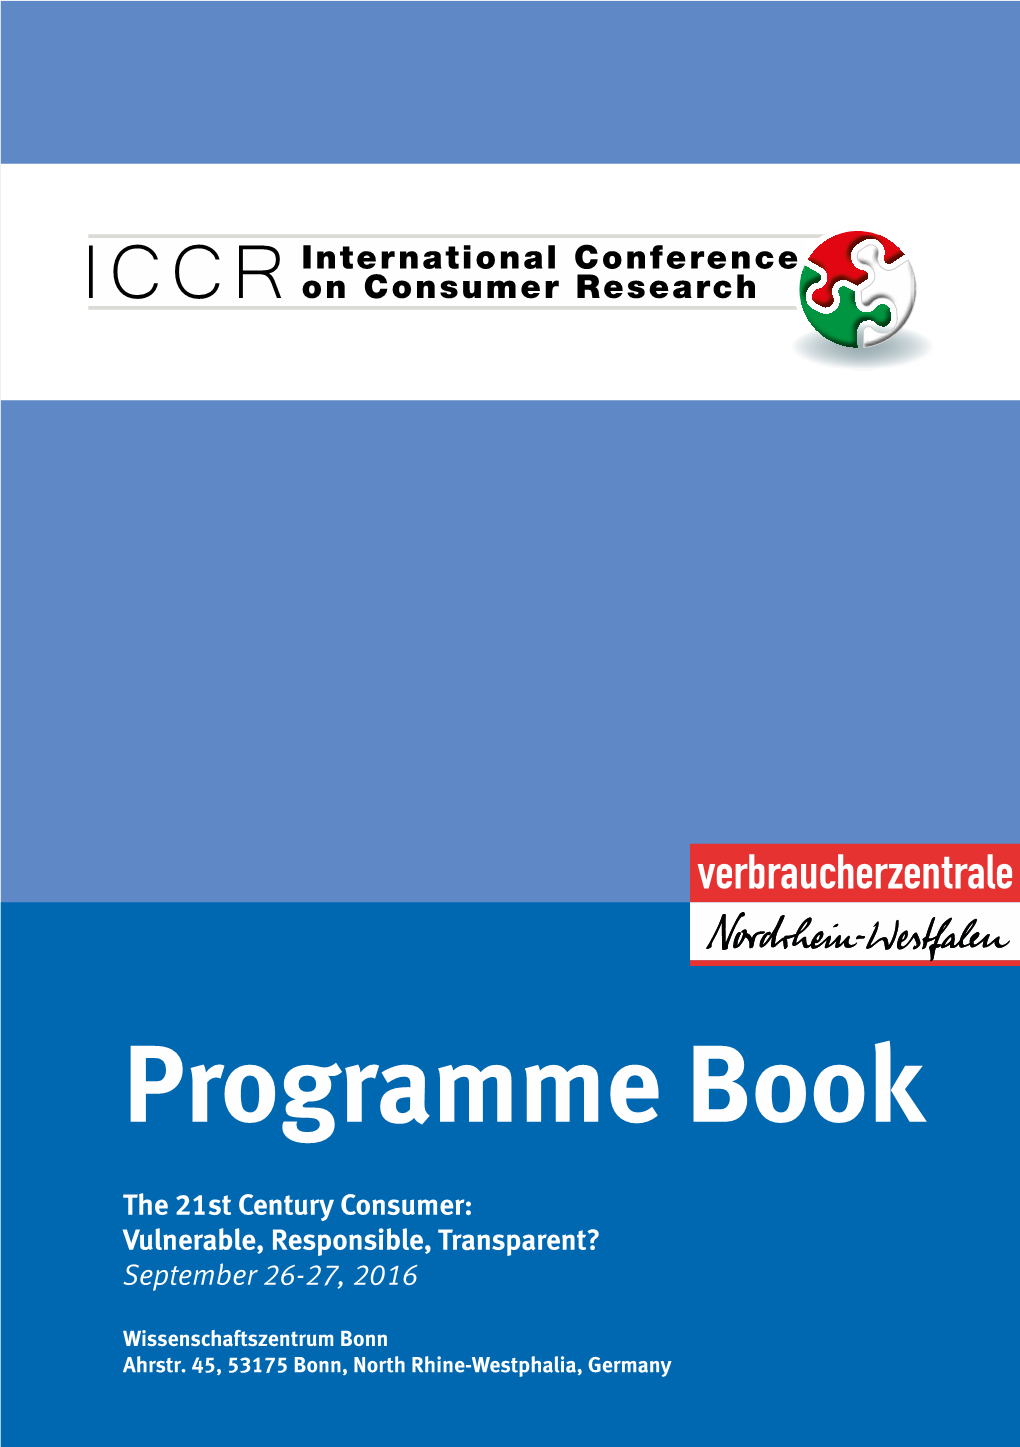 ICCR 2016 | Programme Book